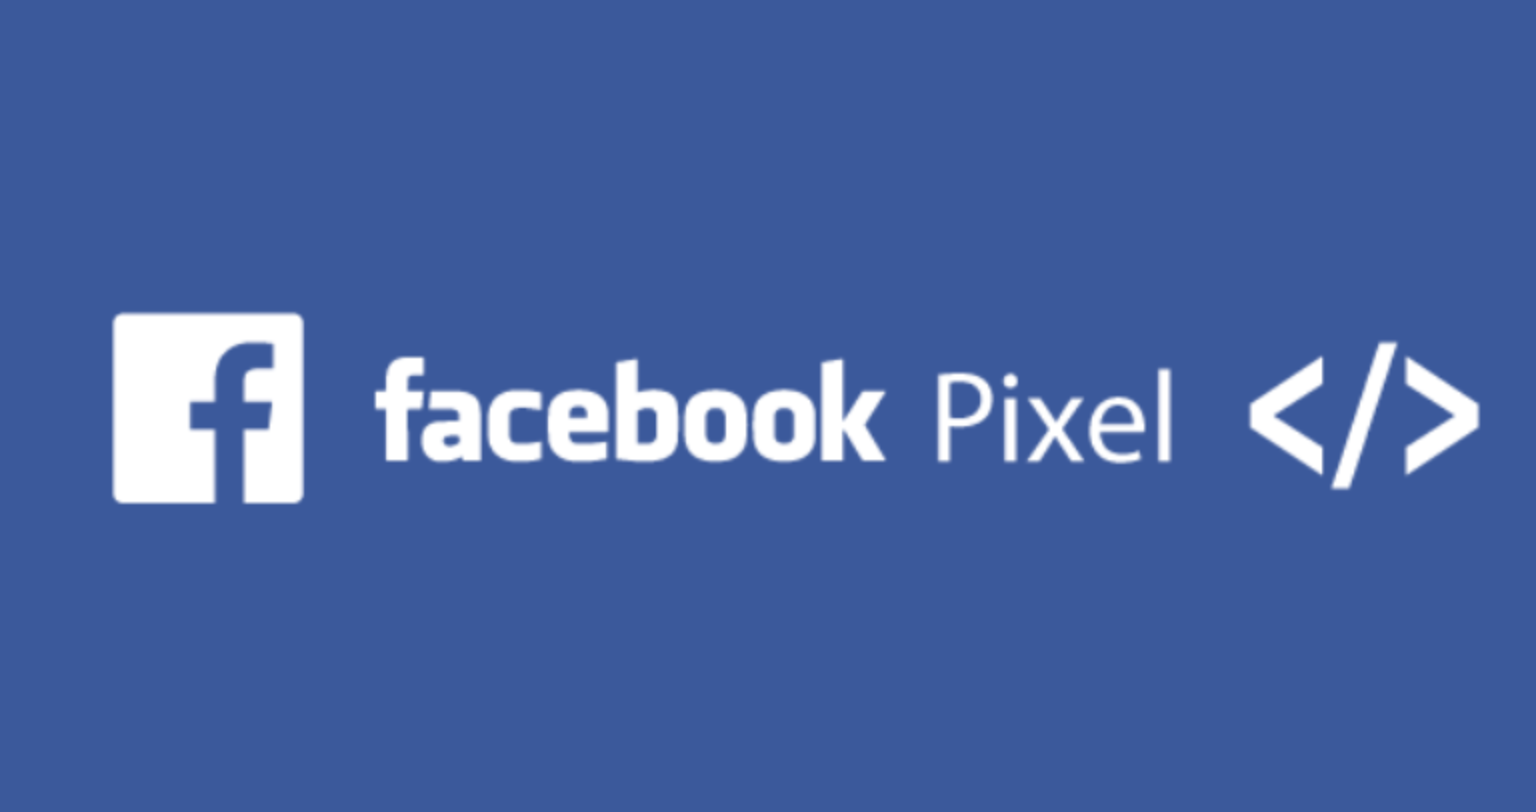 Facebook-Pixel-Helper-Portent